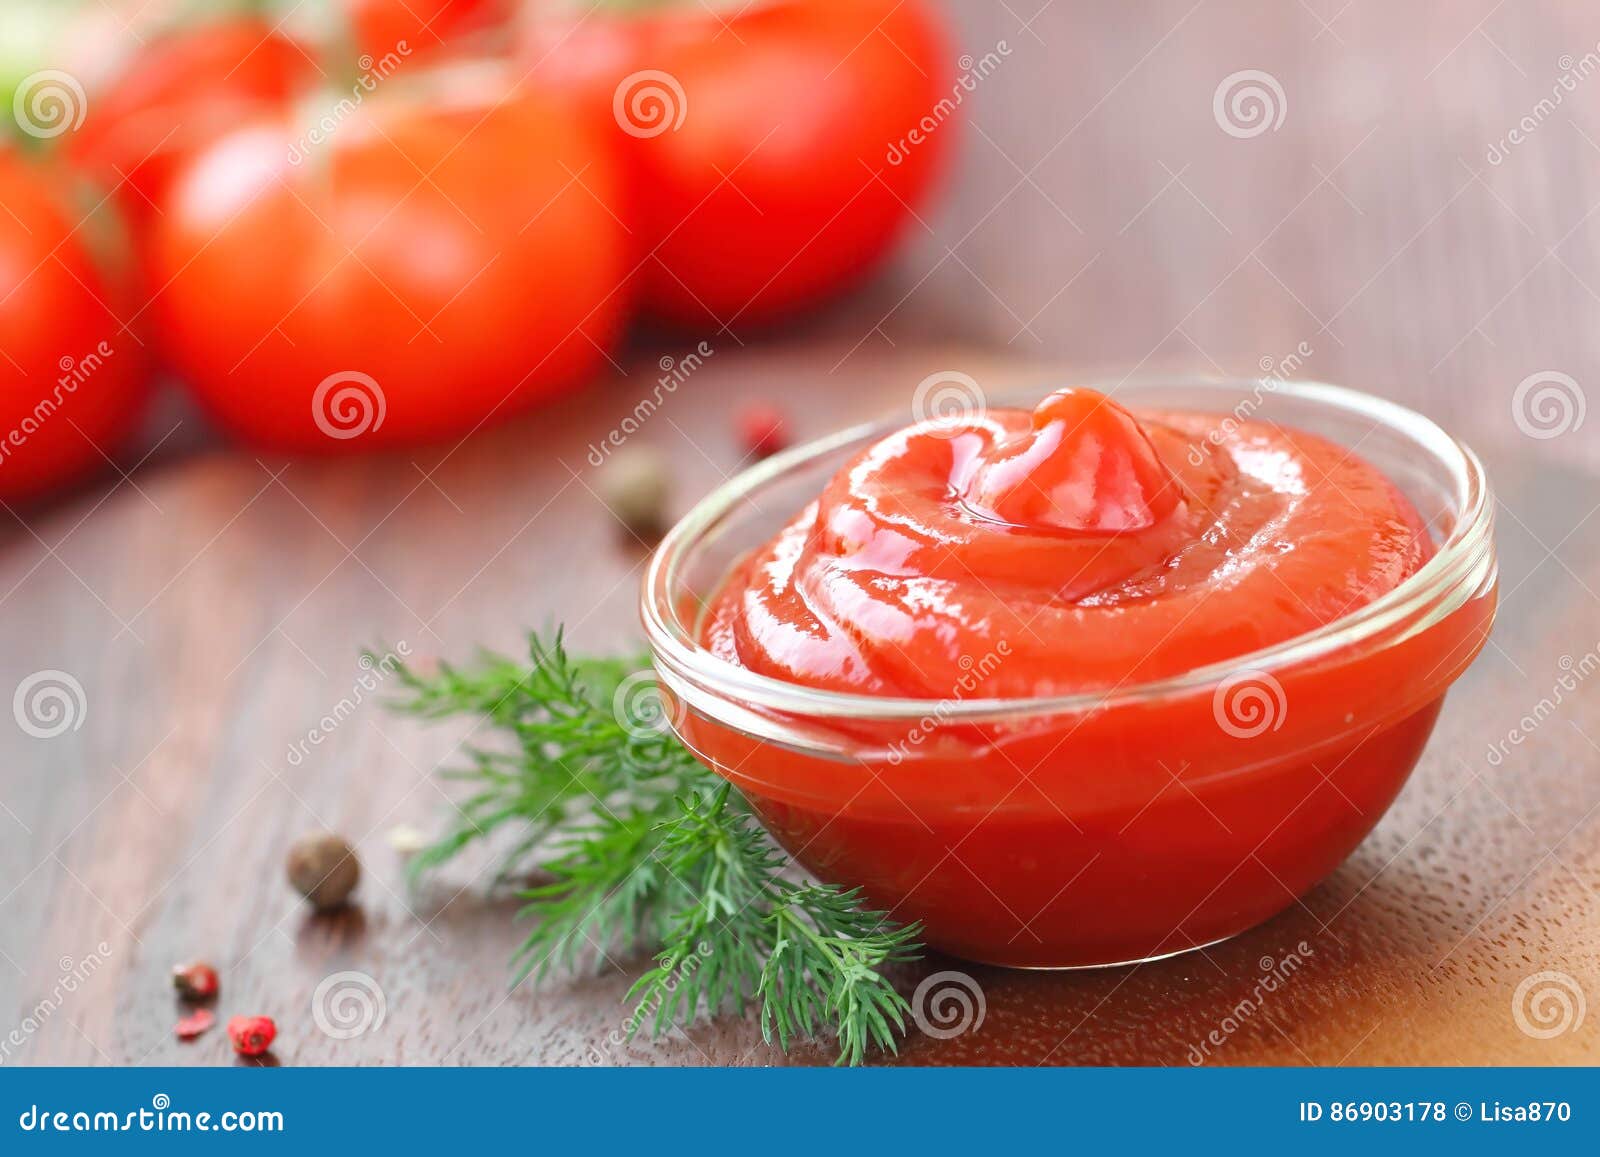 番茄酱白天番茄酱室内番茄酱摄影图配图高清摄影大图-千库网